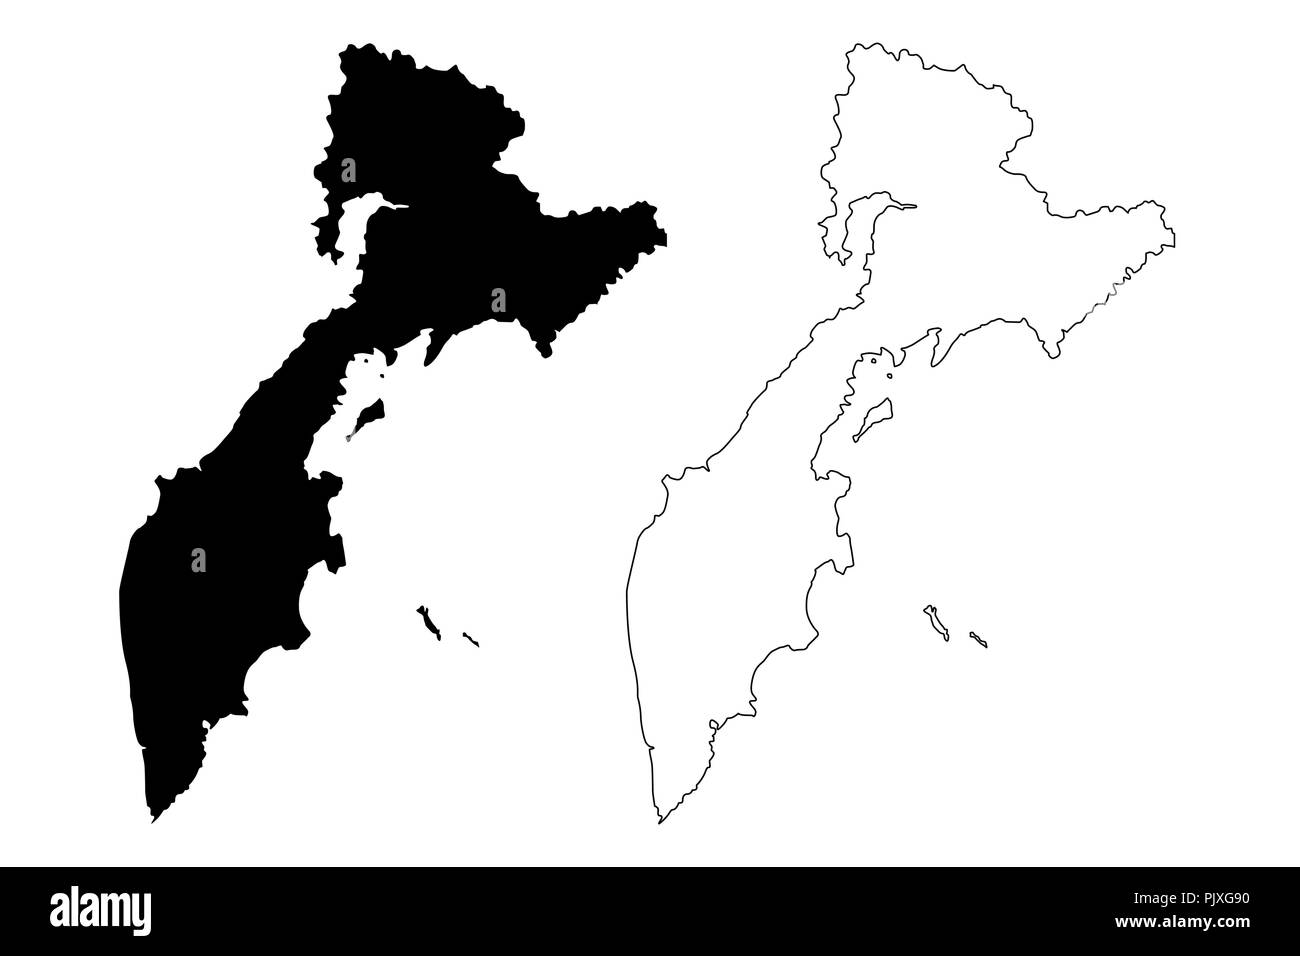 Kamtschatka (Russland, Subjekte der Russischen Föderation, Krais Russlands) Karte Vektor-illustration, kritzeln Skizze Kamtschatka Karte Stock Vektor